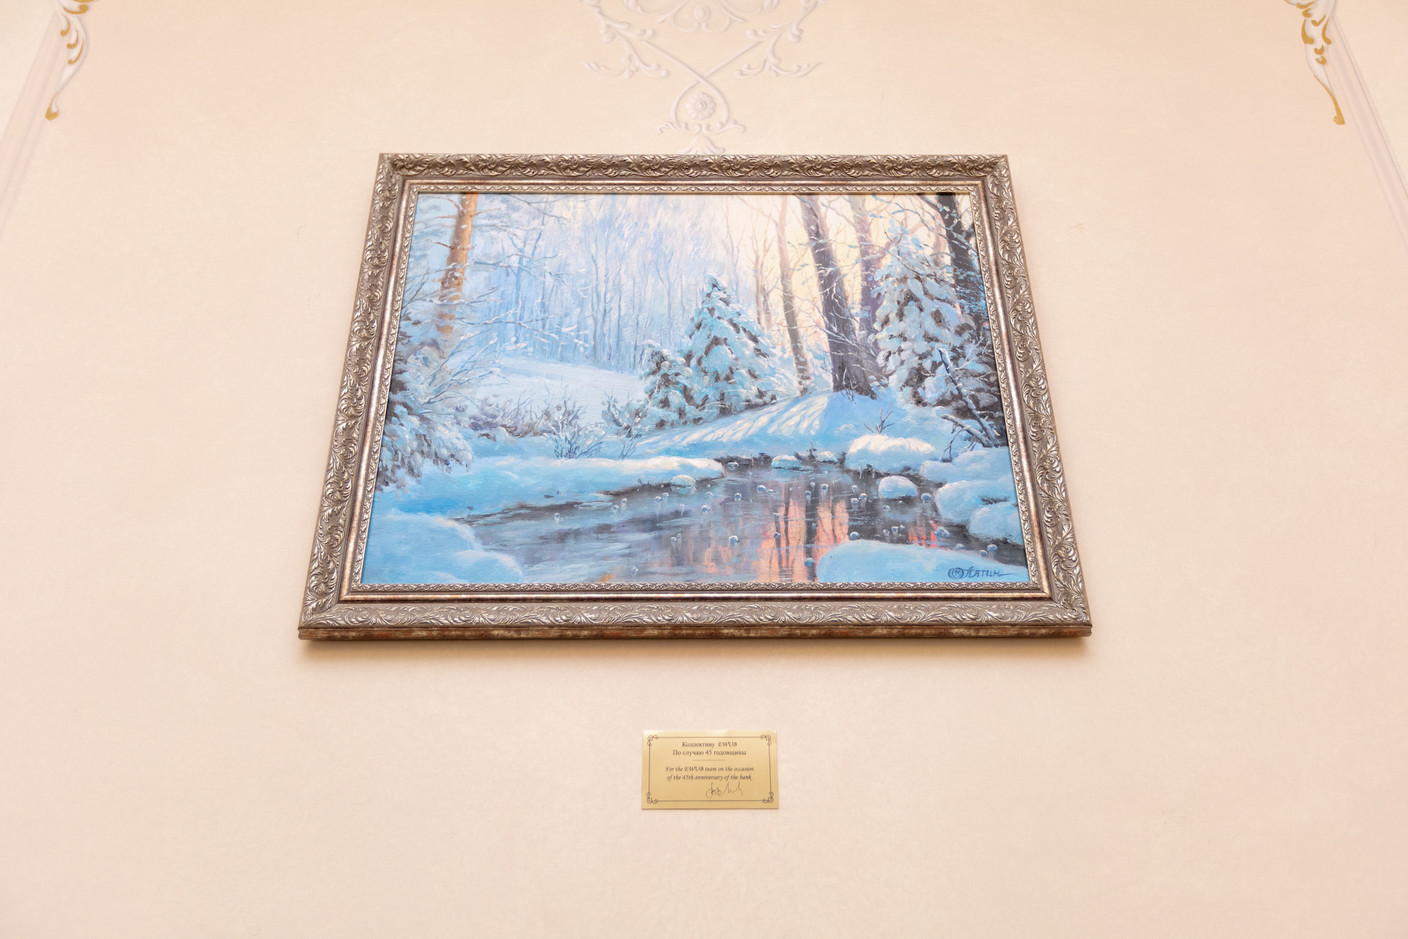 Cadeau signé du propriétaire universel de la banque, Vladimir Evtushenkov, pour son 45e anniversaire: un tableau de l’artiste de Saint-Pétersbourg Oleg Pyatin.  (Photo: Romain Gamba/Maison Moderne)